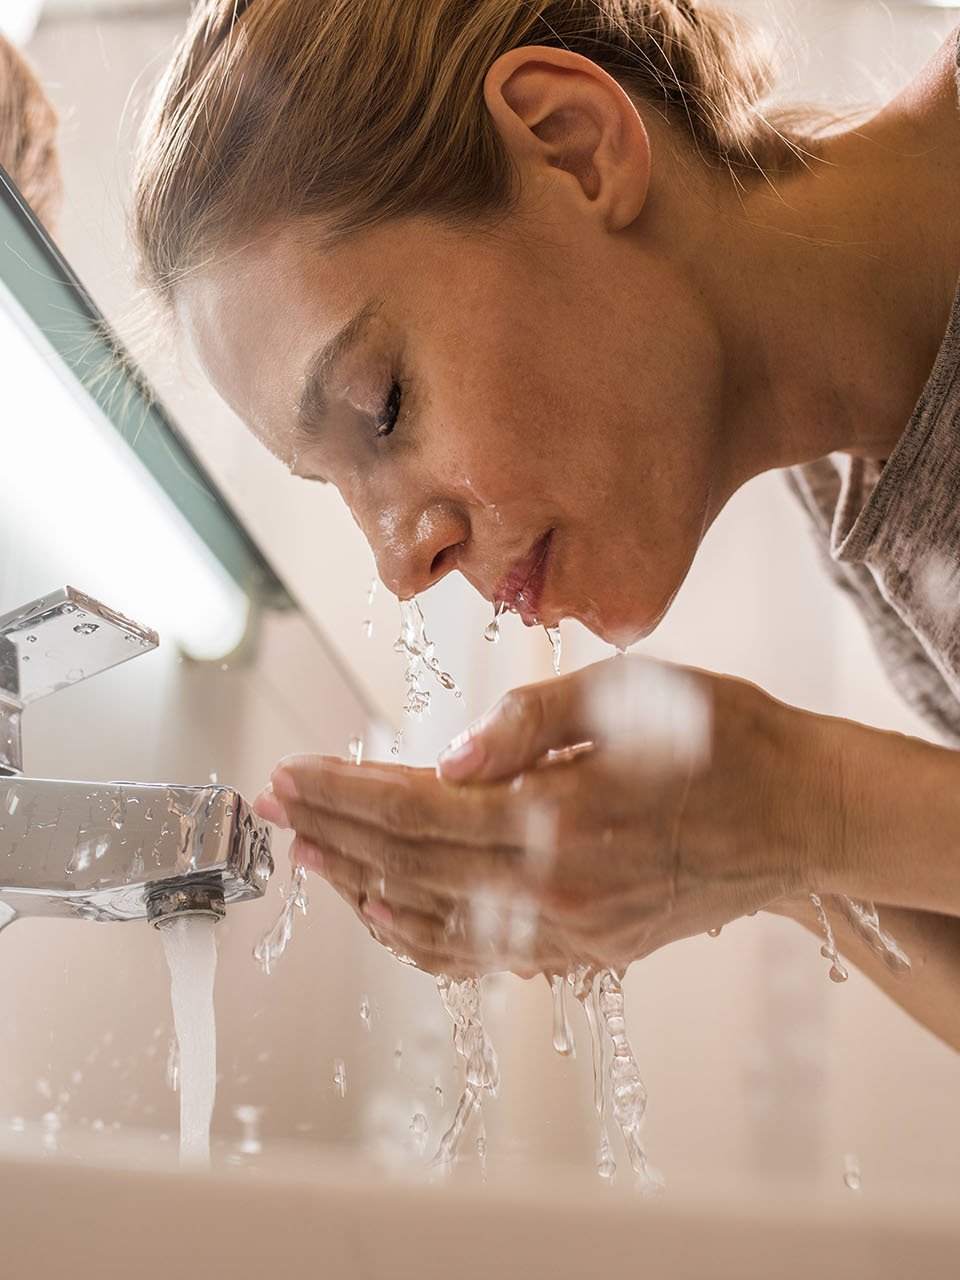 Une femme se lave le visage au-dessus de l'évier